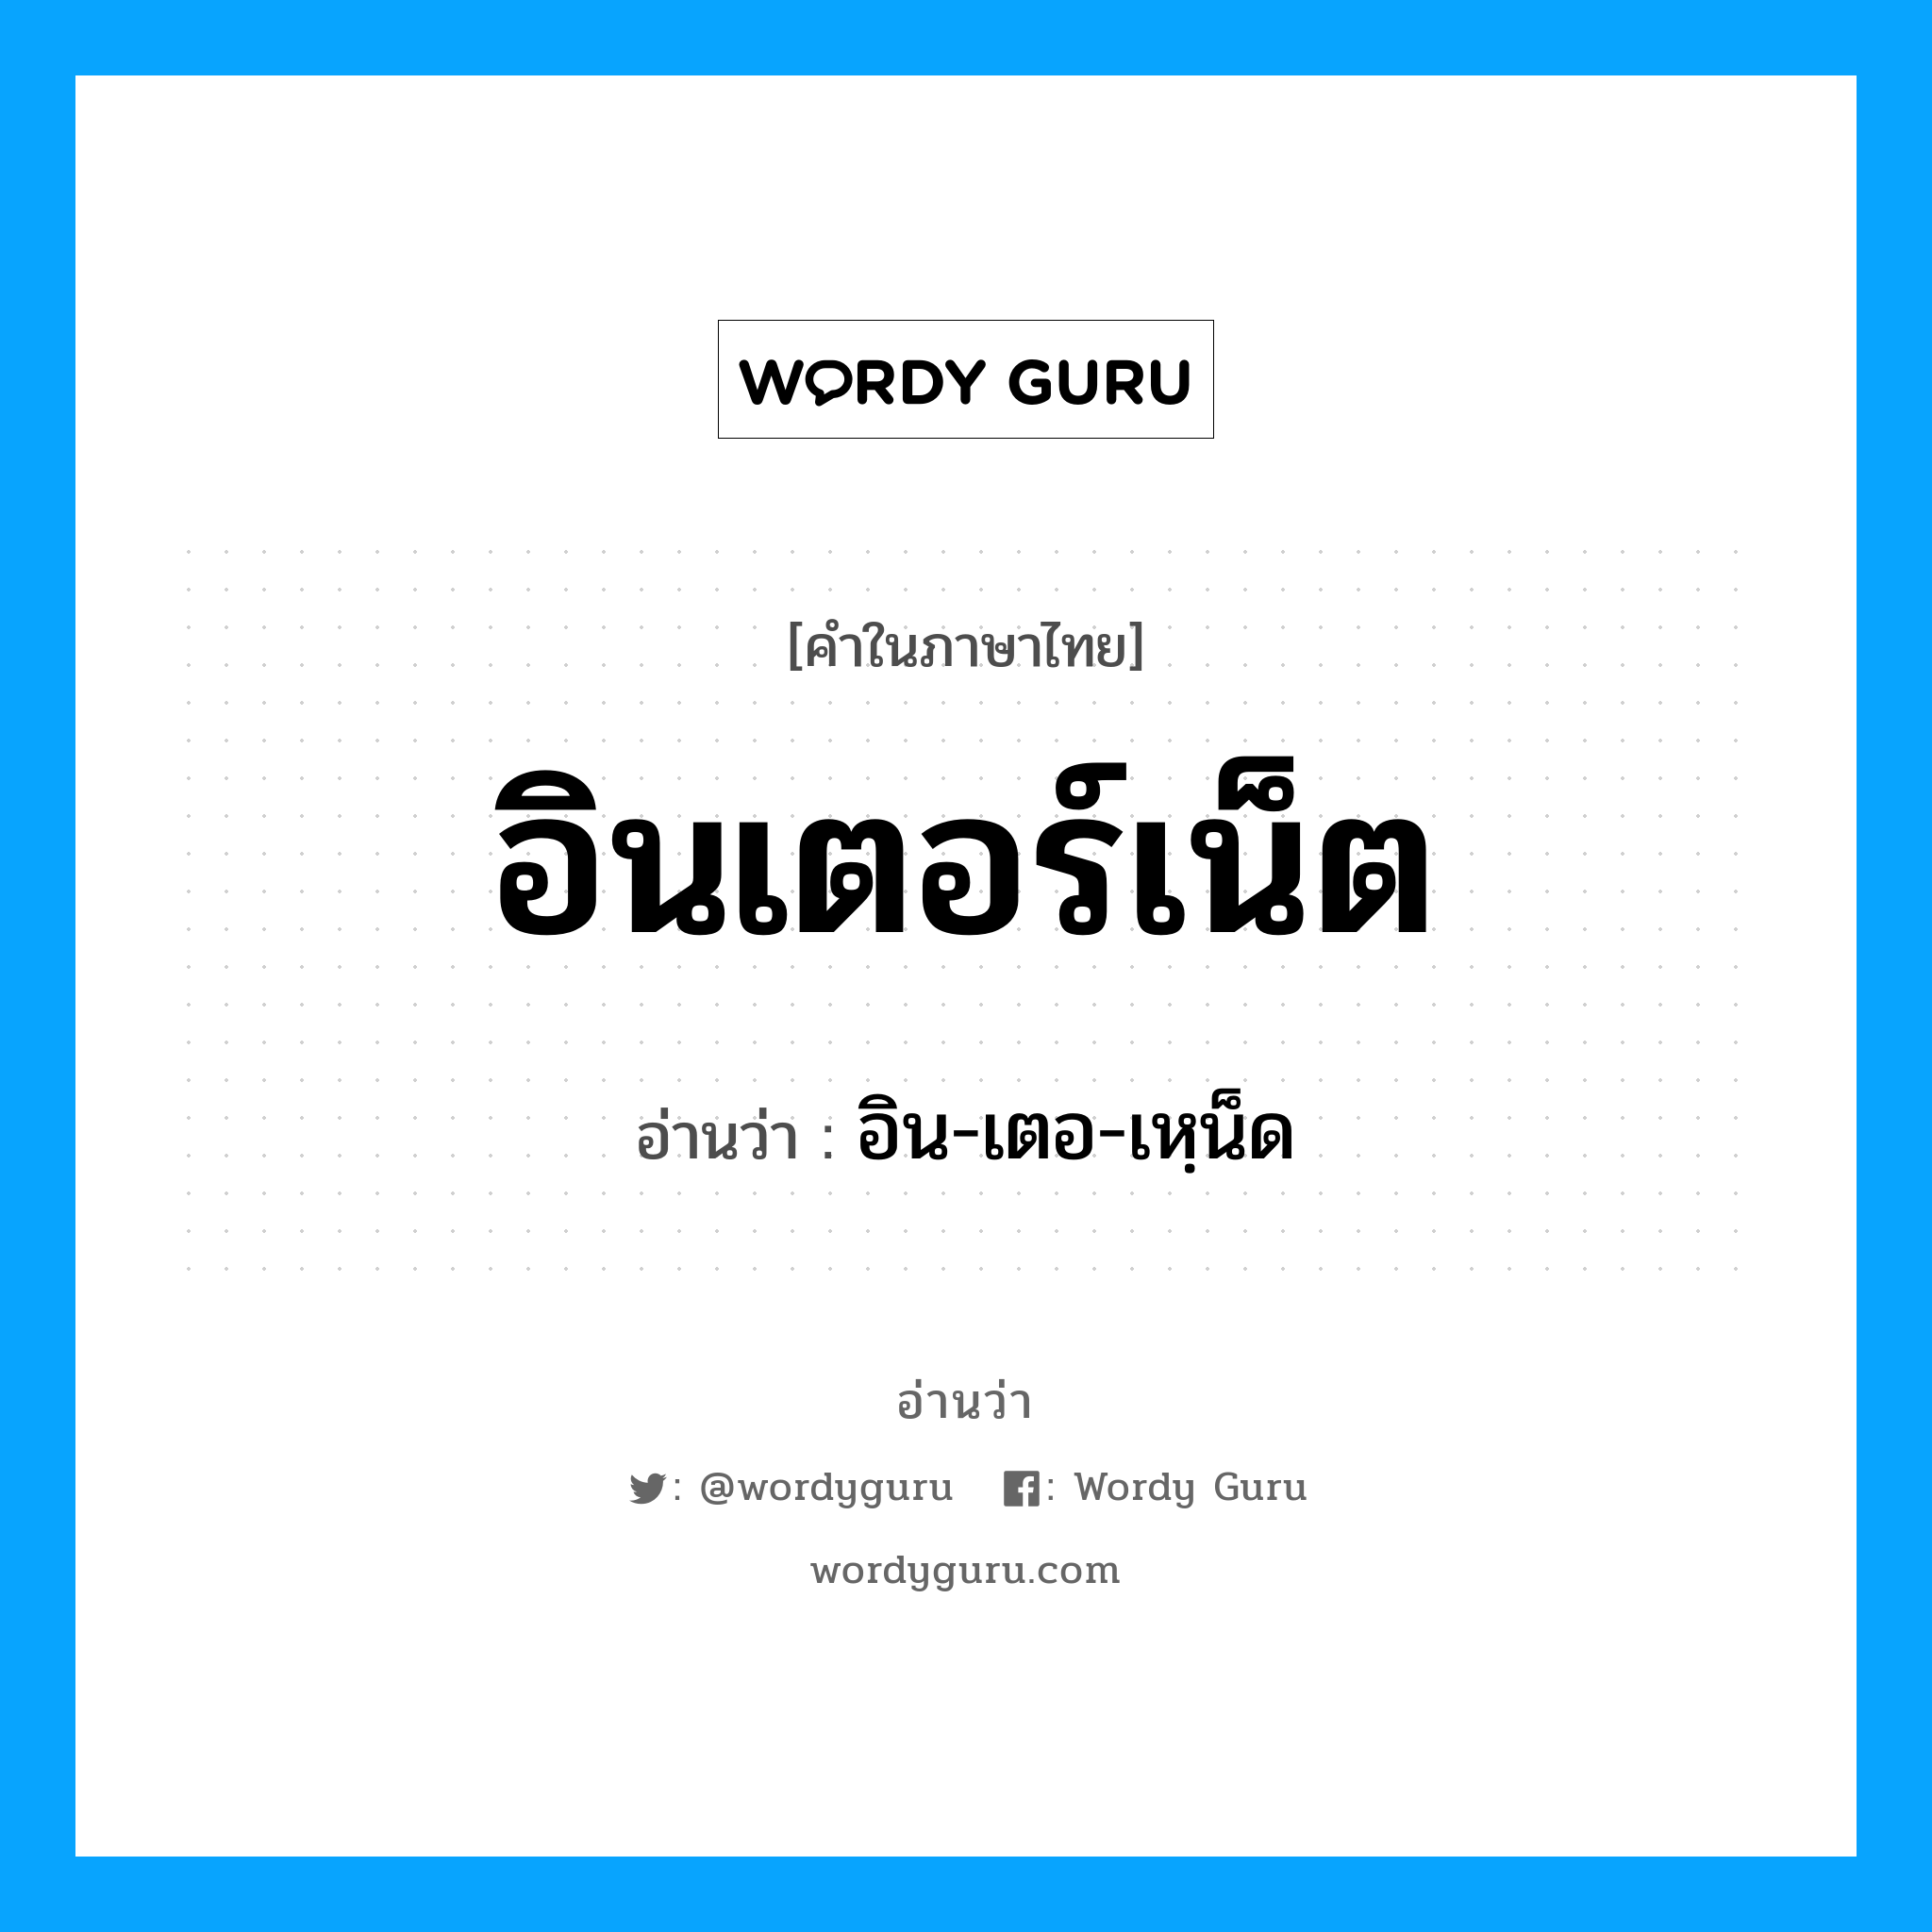 อิน-เตอ-เหฺน็ด เป็นคำอ่านของคำไหน?, คำในภาษาไทย อิน-เตอ-เหฺน็ด อ่านว่า อินเตอร์เน็ต